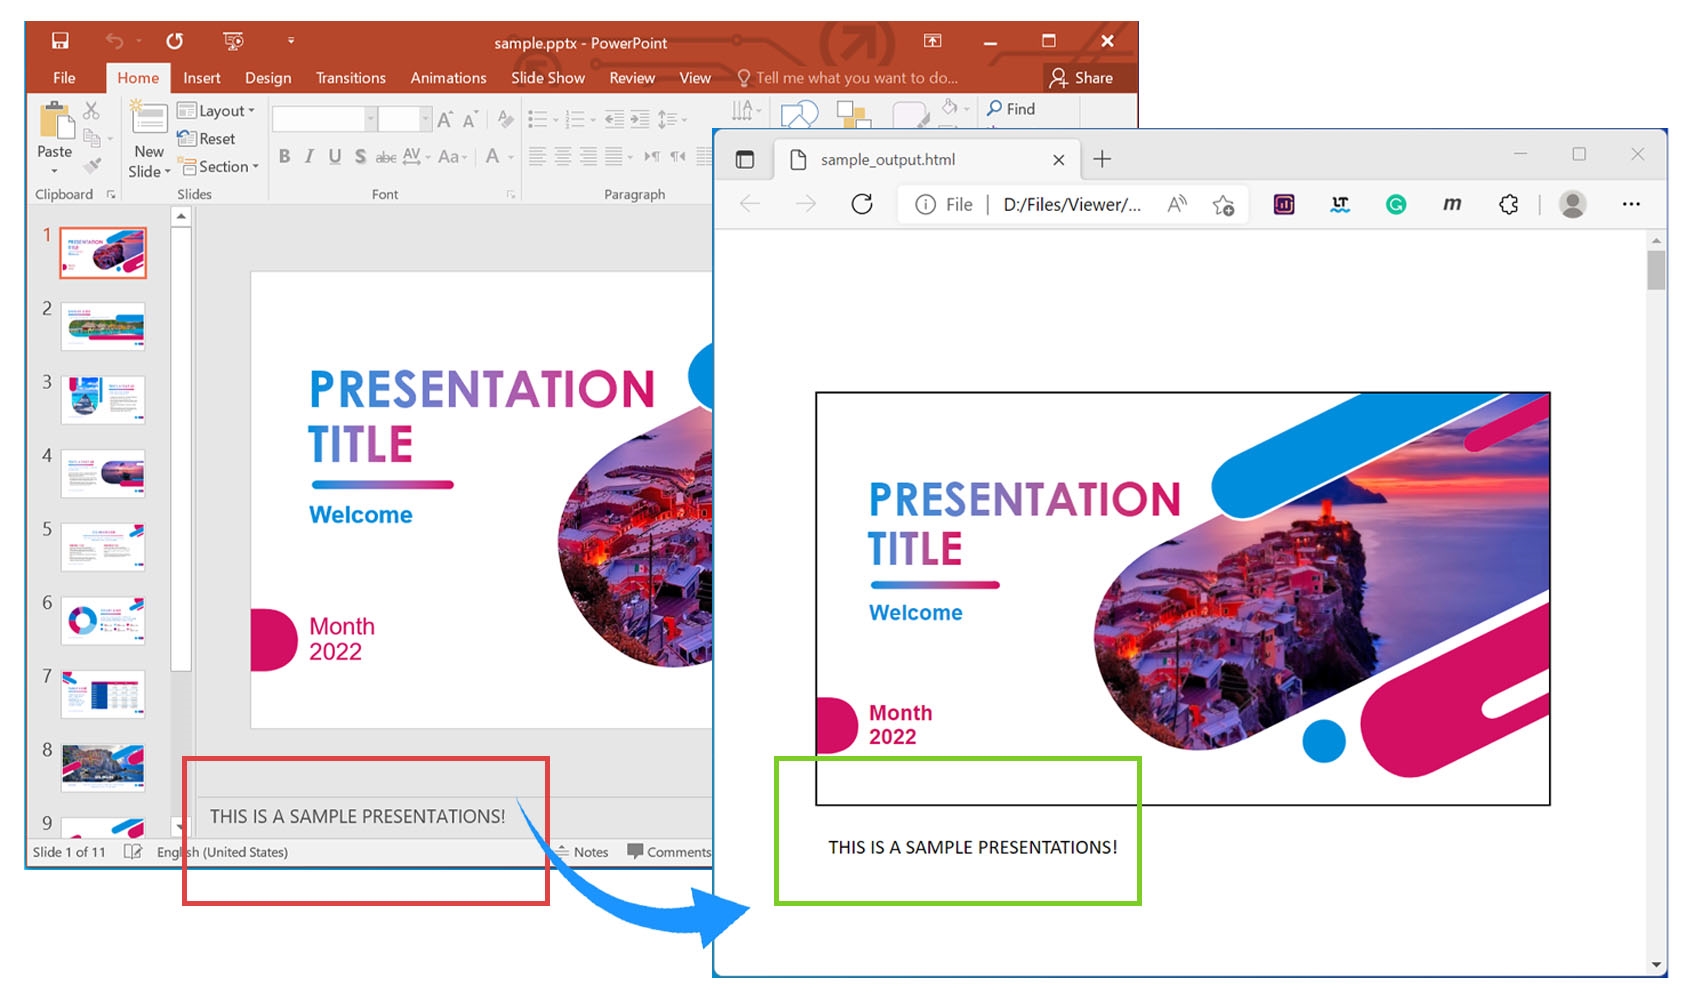 Рендеринг заметок к презентациям PowerPoint в формате HTML с использованием C#.